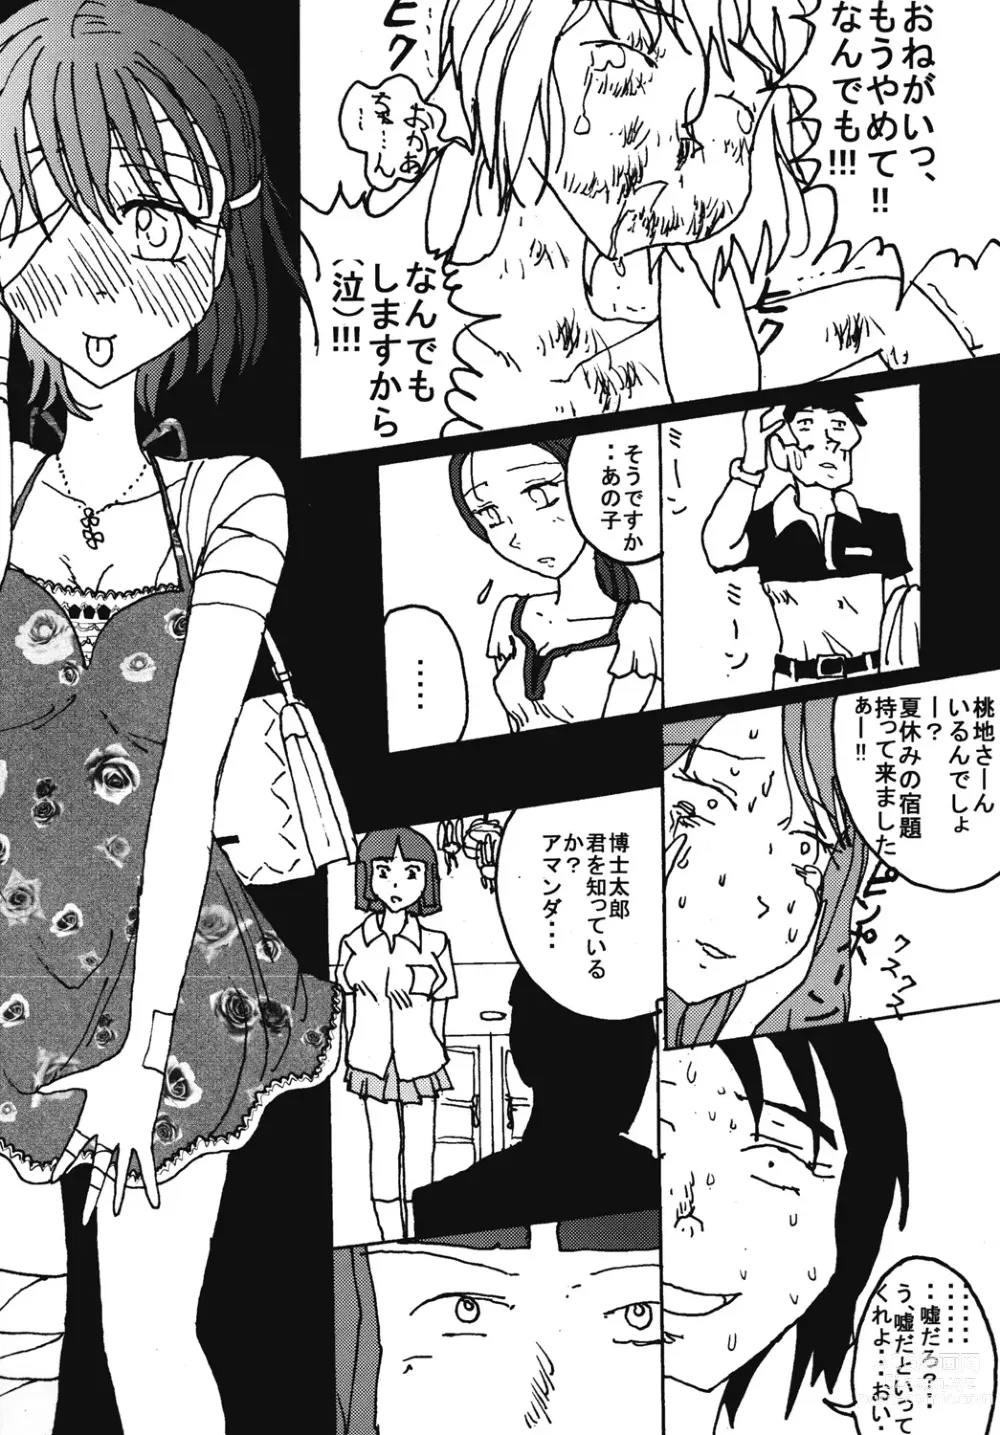 Page 56 of doujinshi Mune Ippai no Dizzy